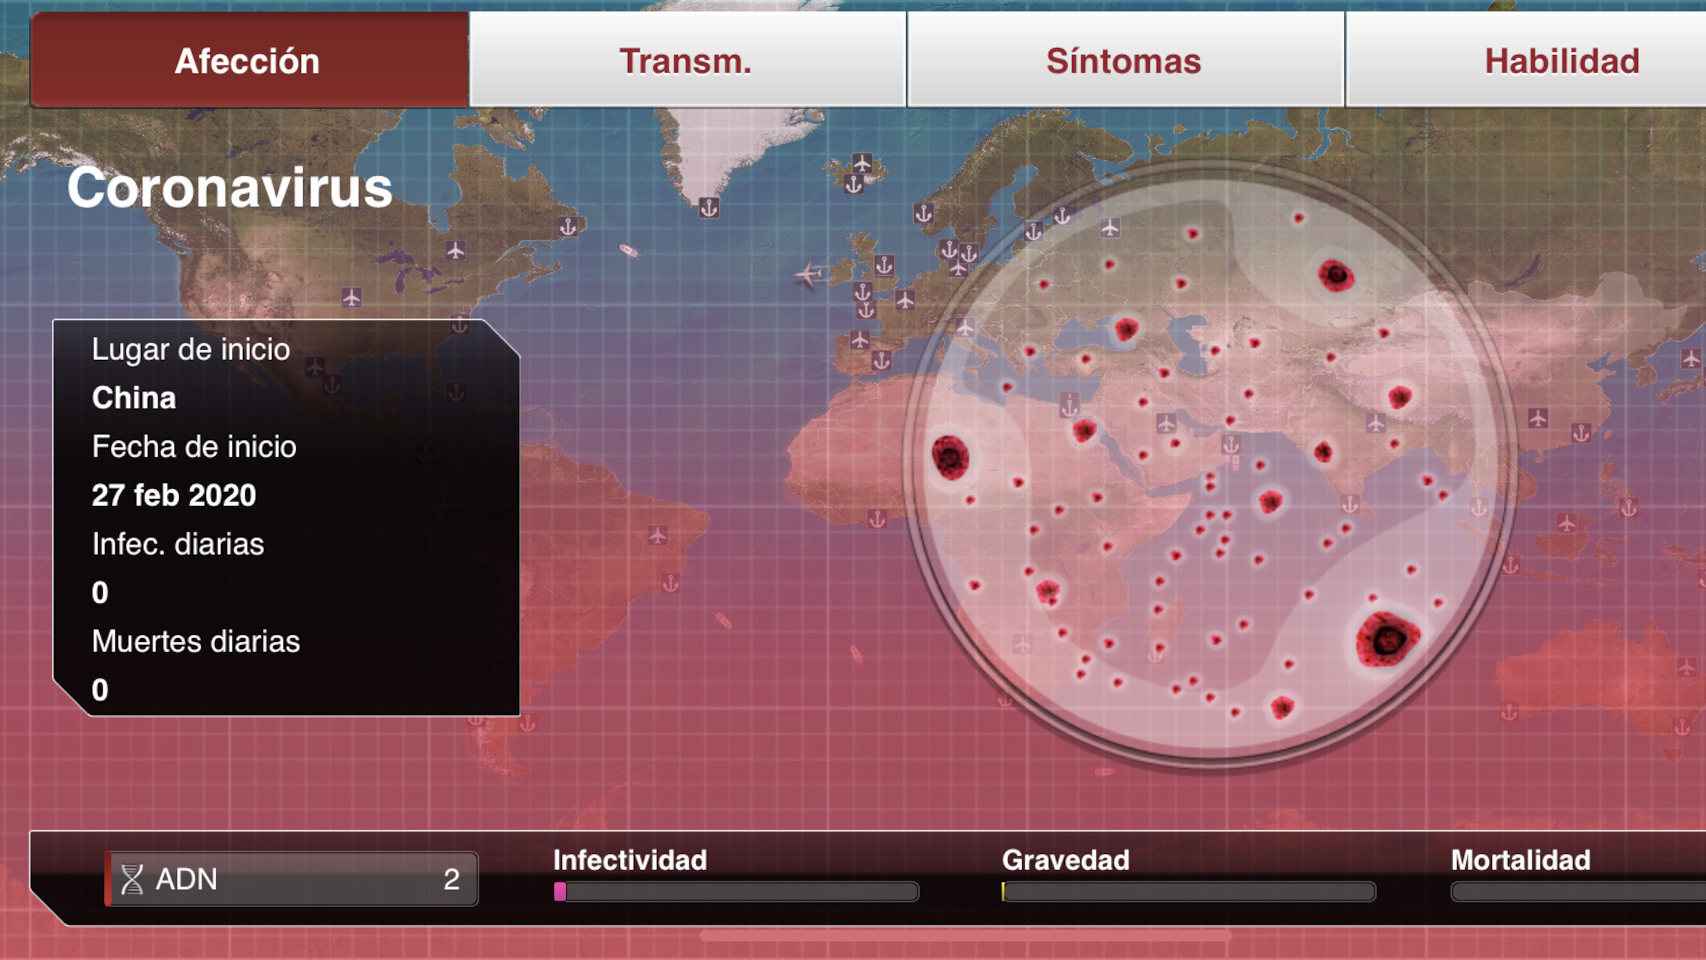 Plague Inc. simula detalles como el movimiento de personas con una enfermedad como el coronavirus